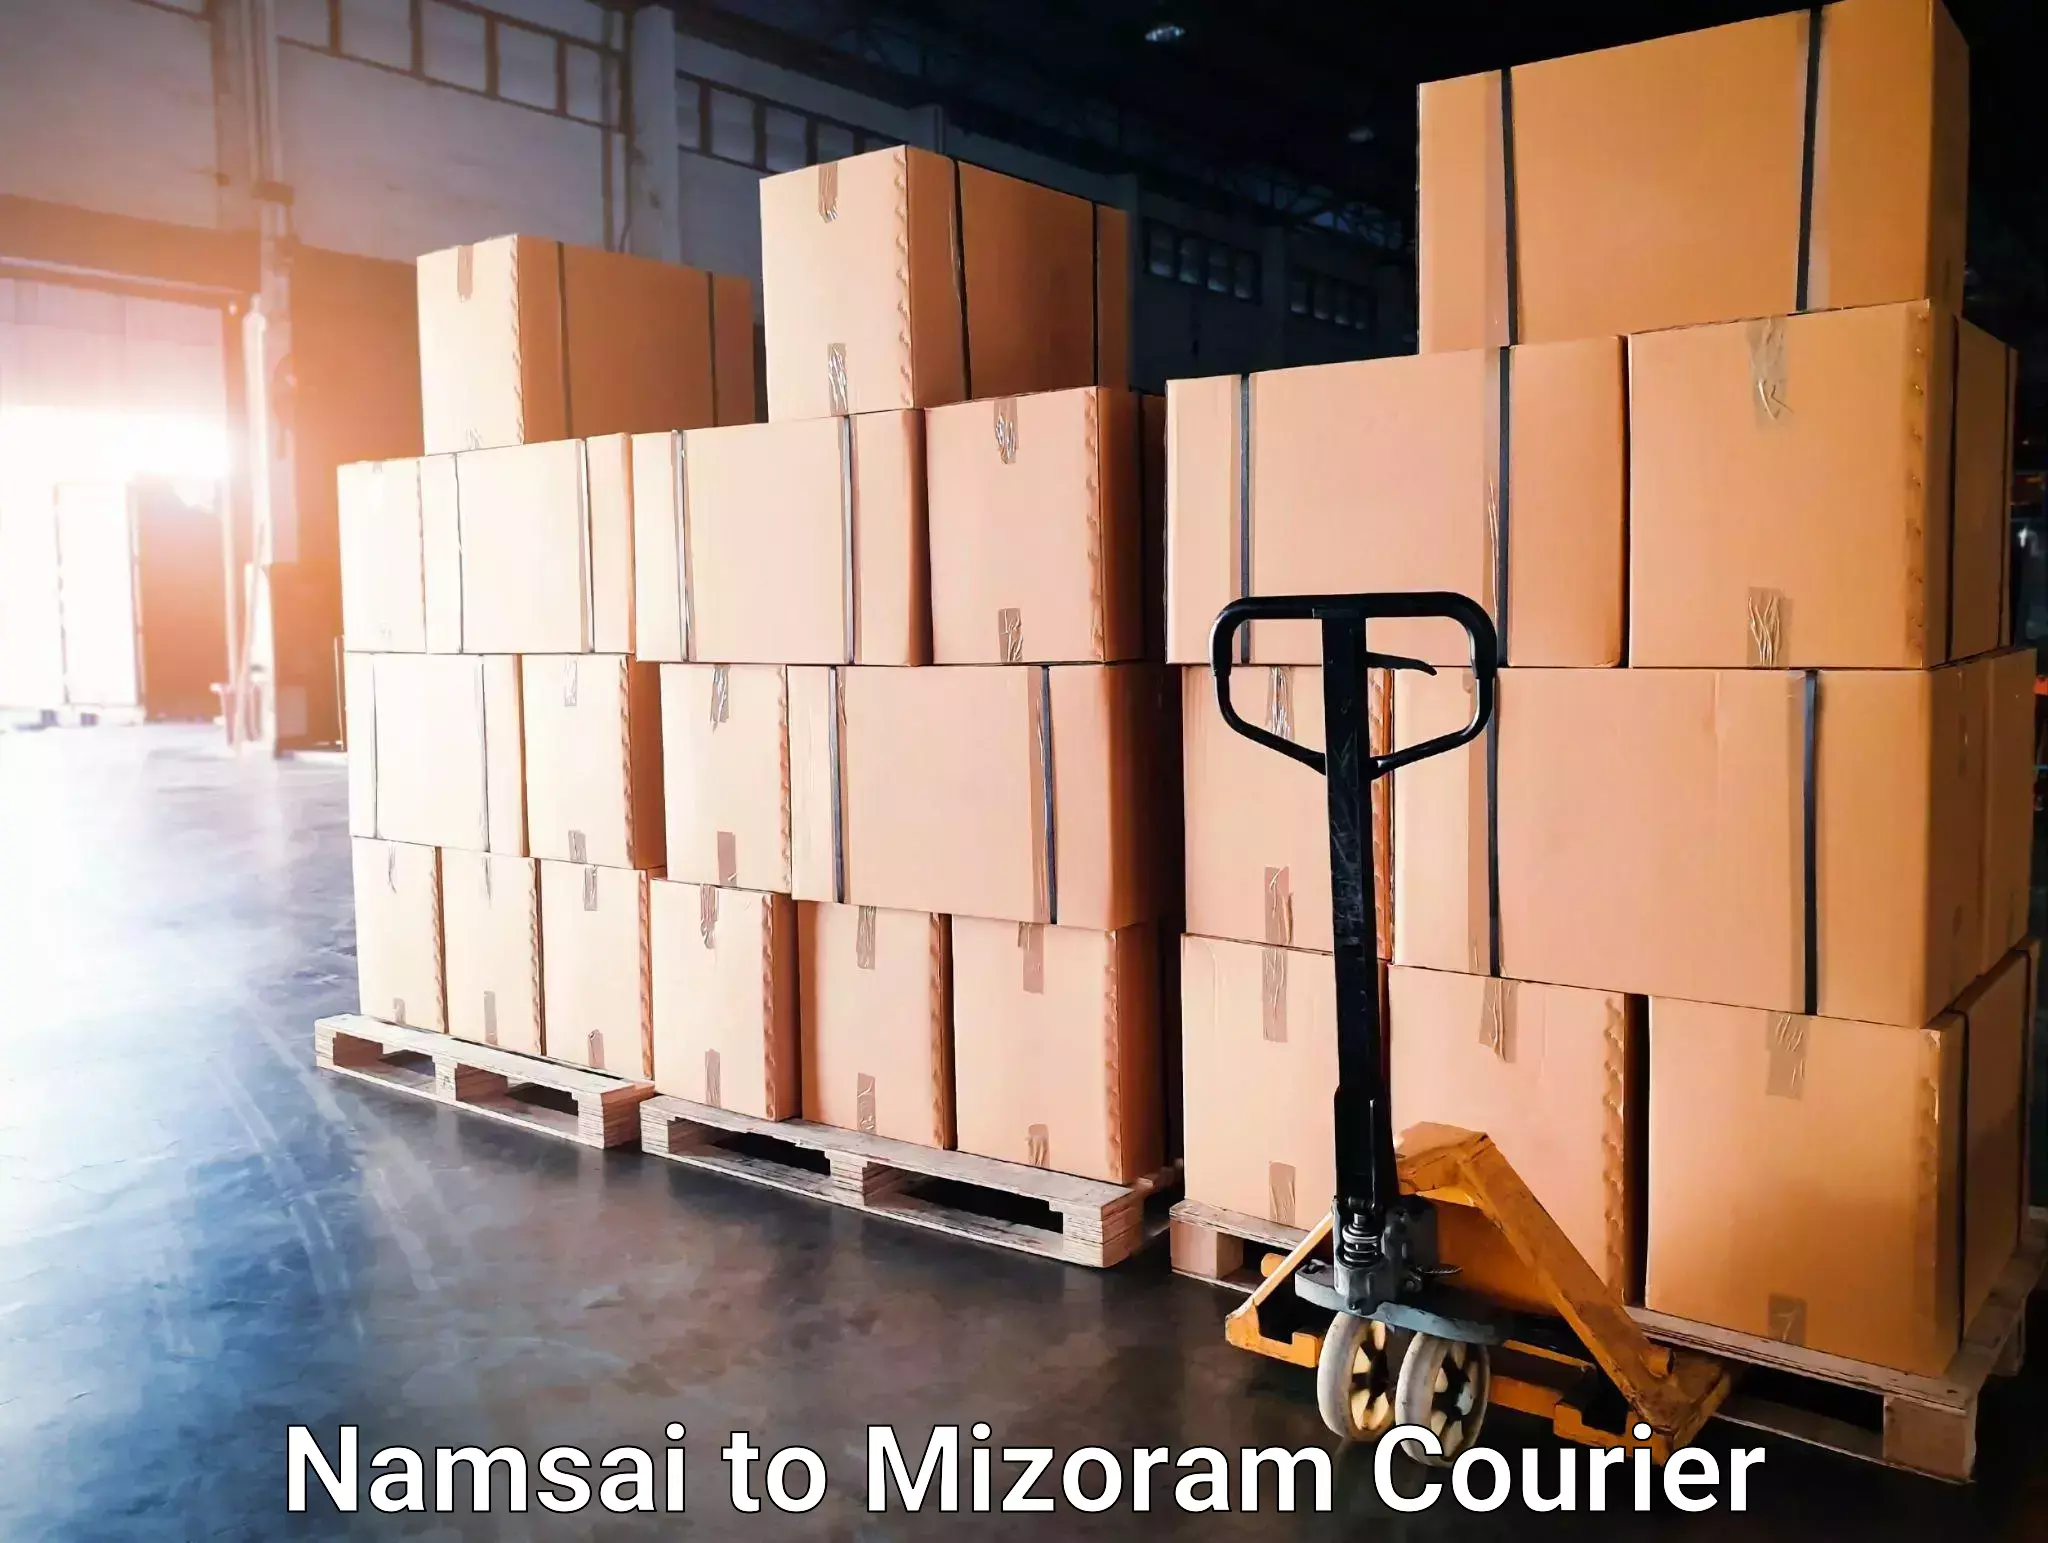 Digital courier platforms Namsai to Mizoram